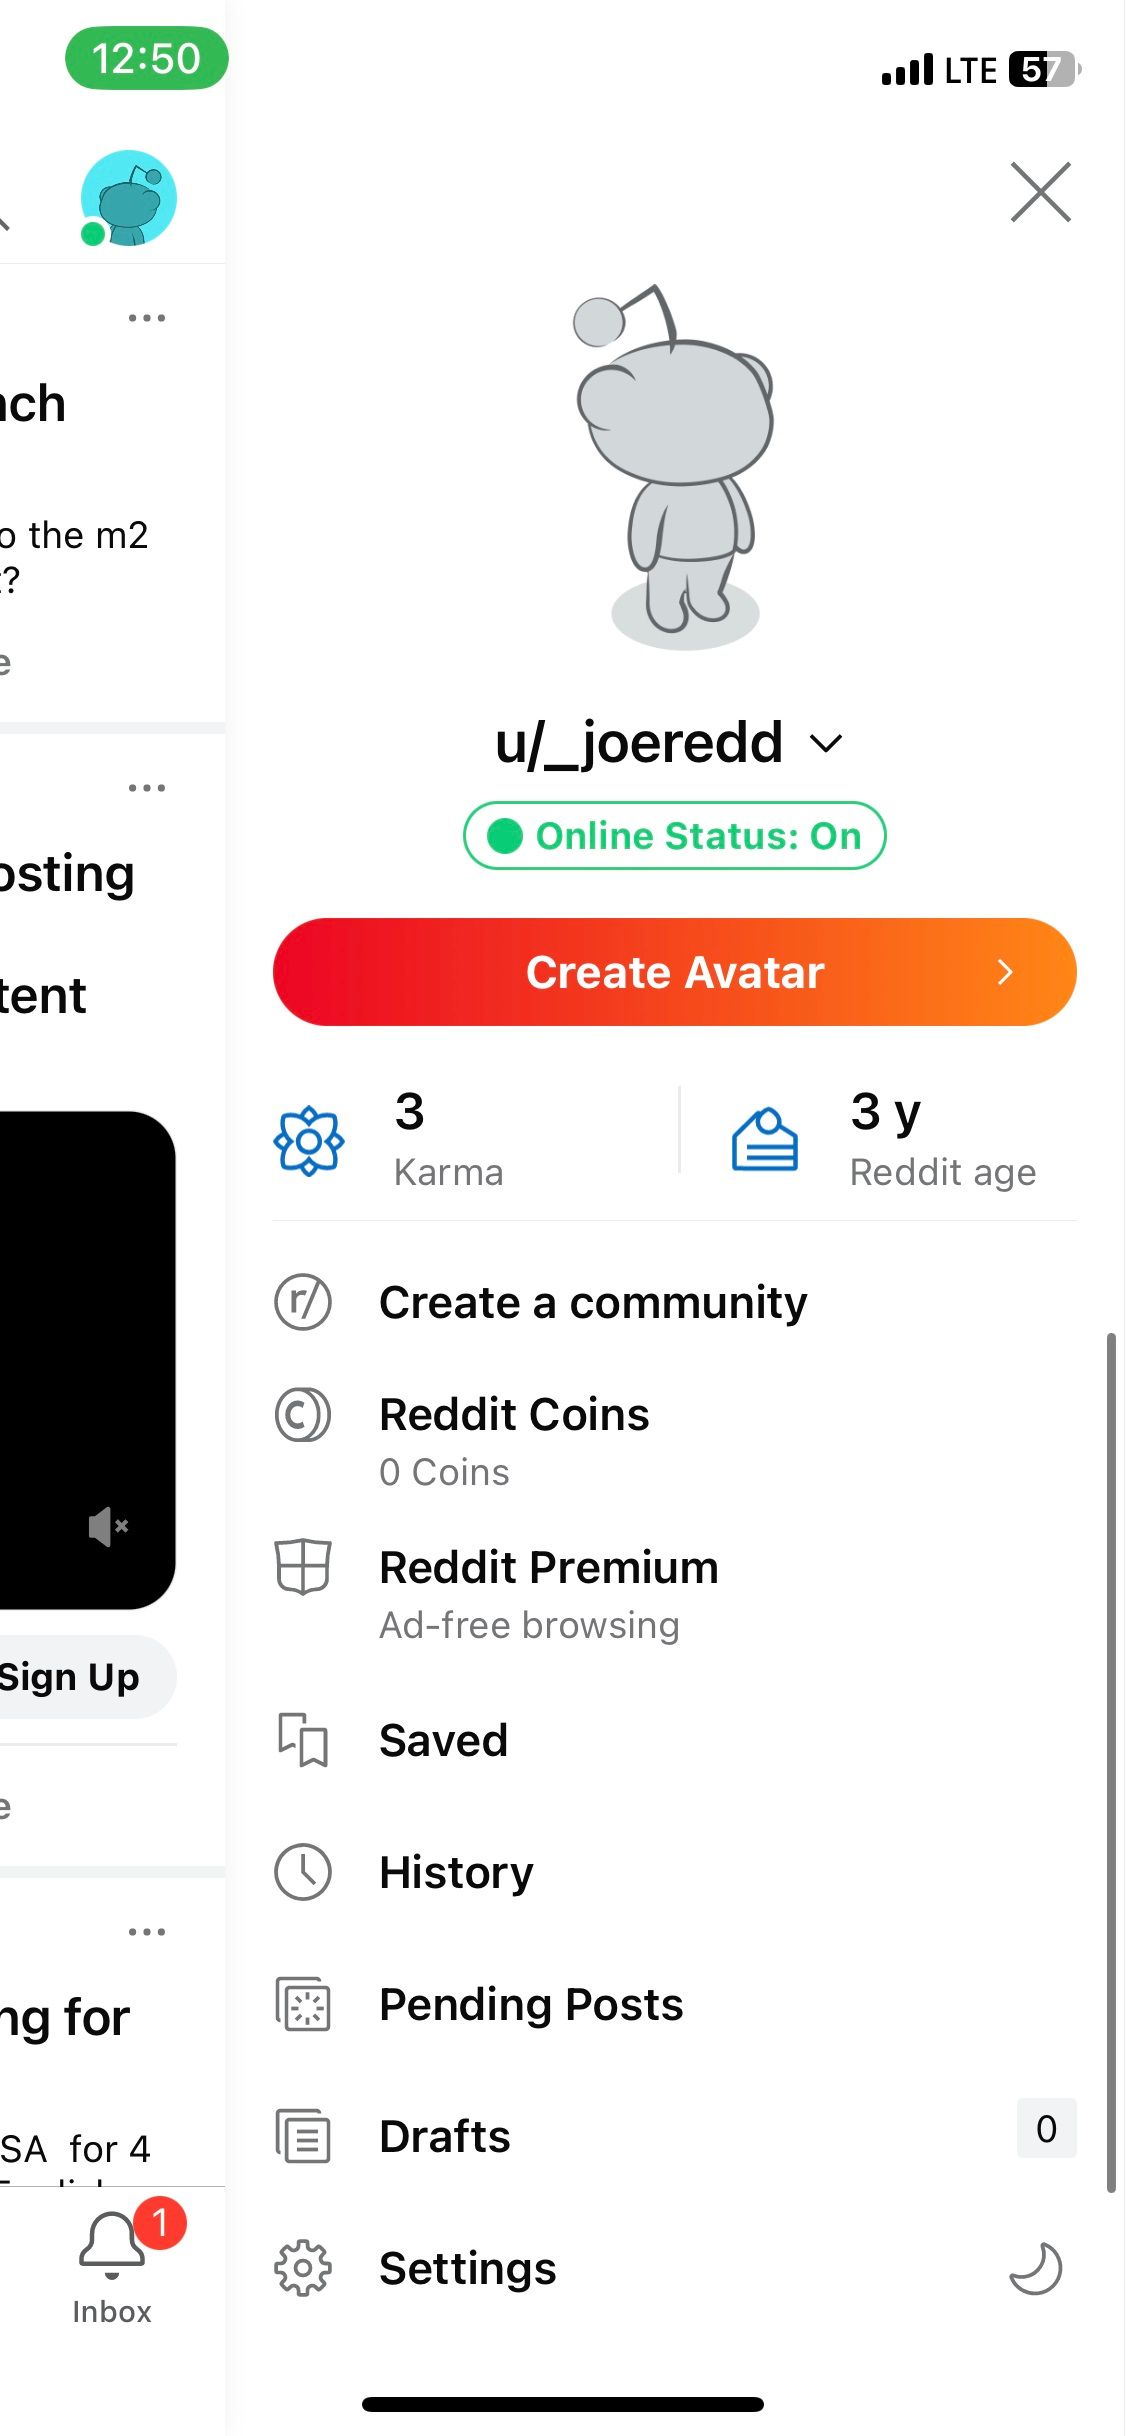 screenshot of Reddit profile menu